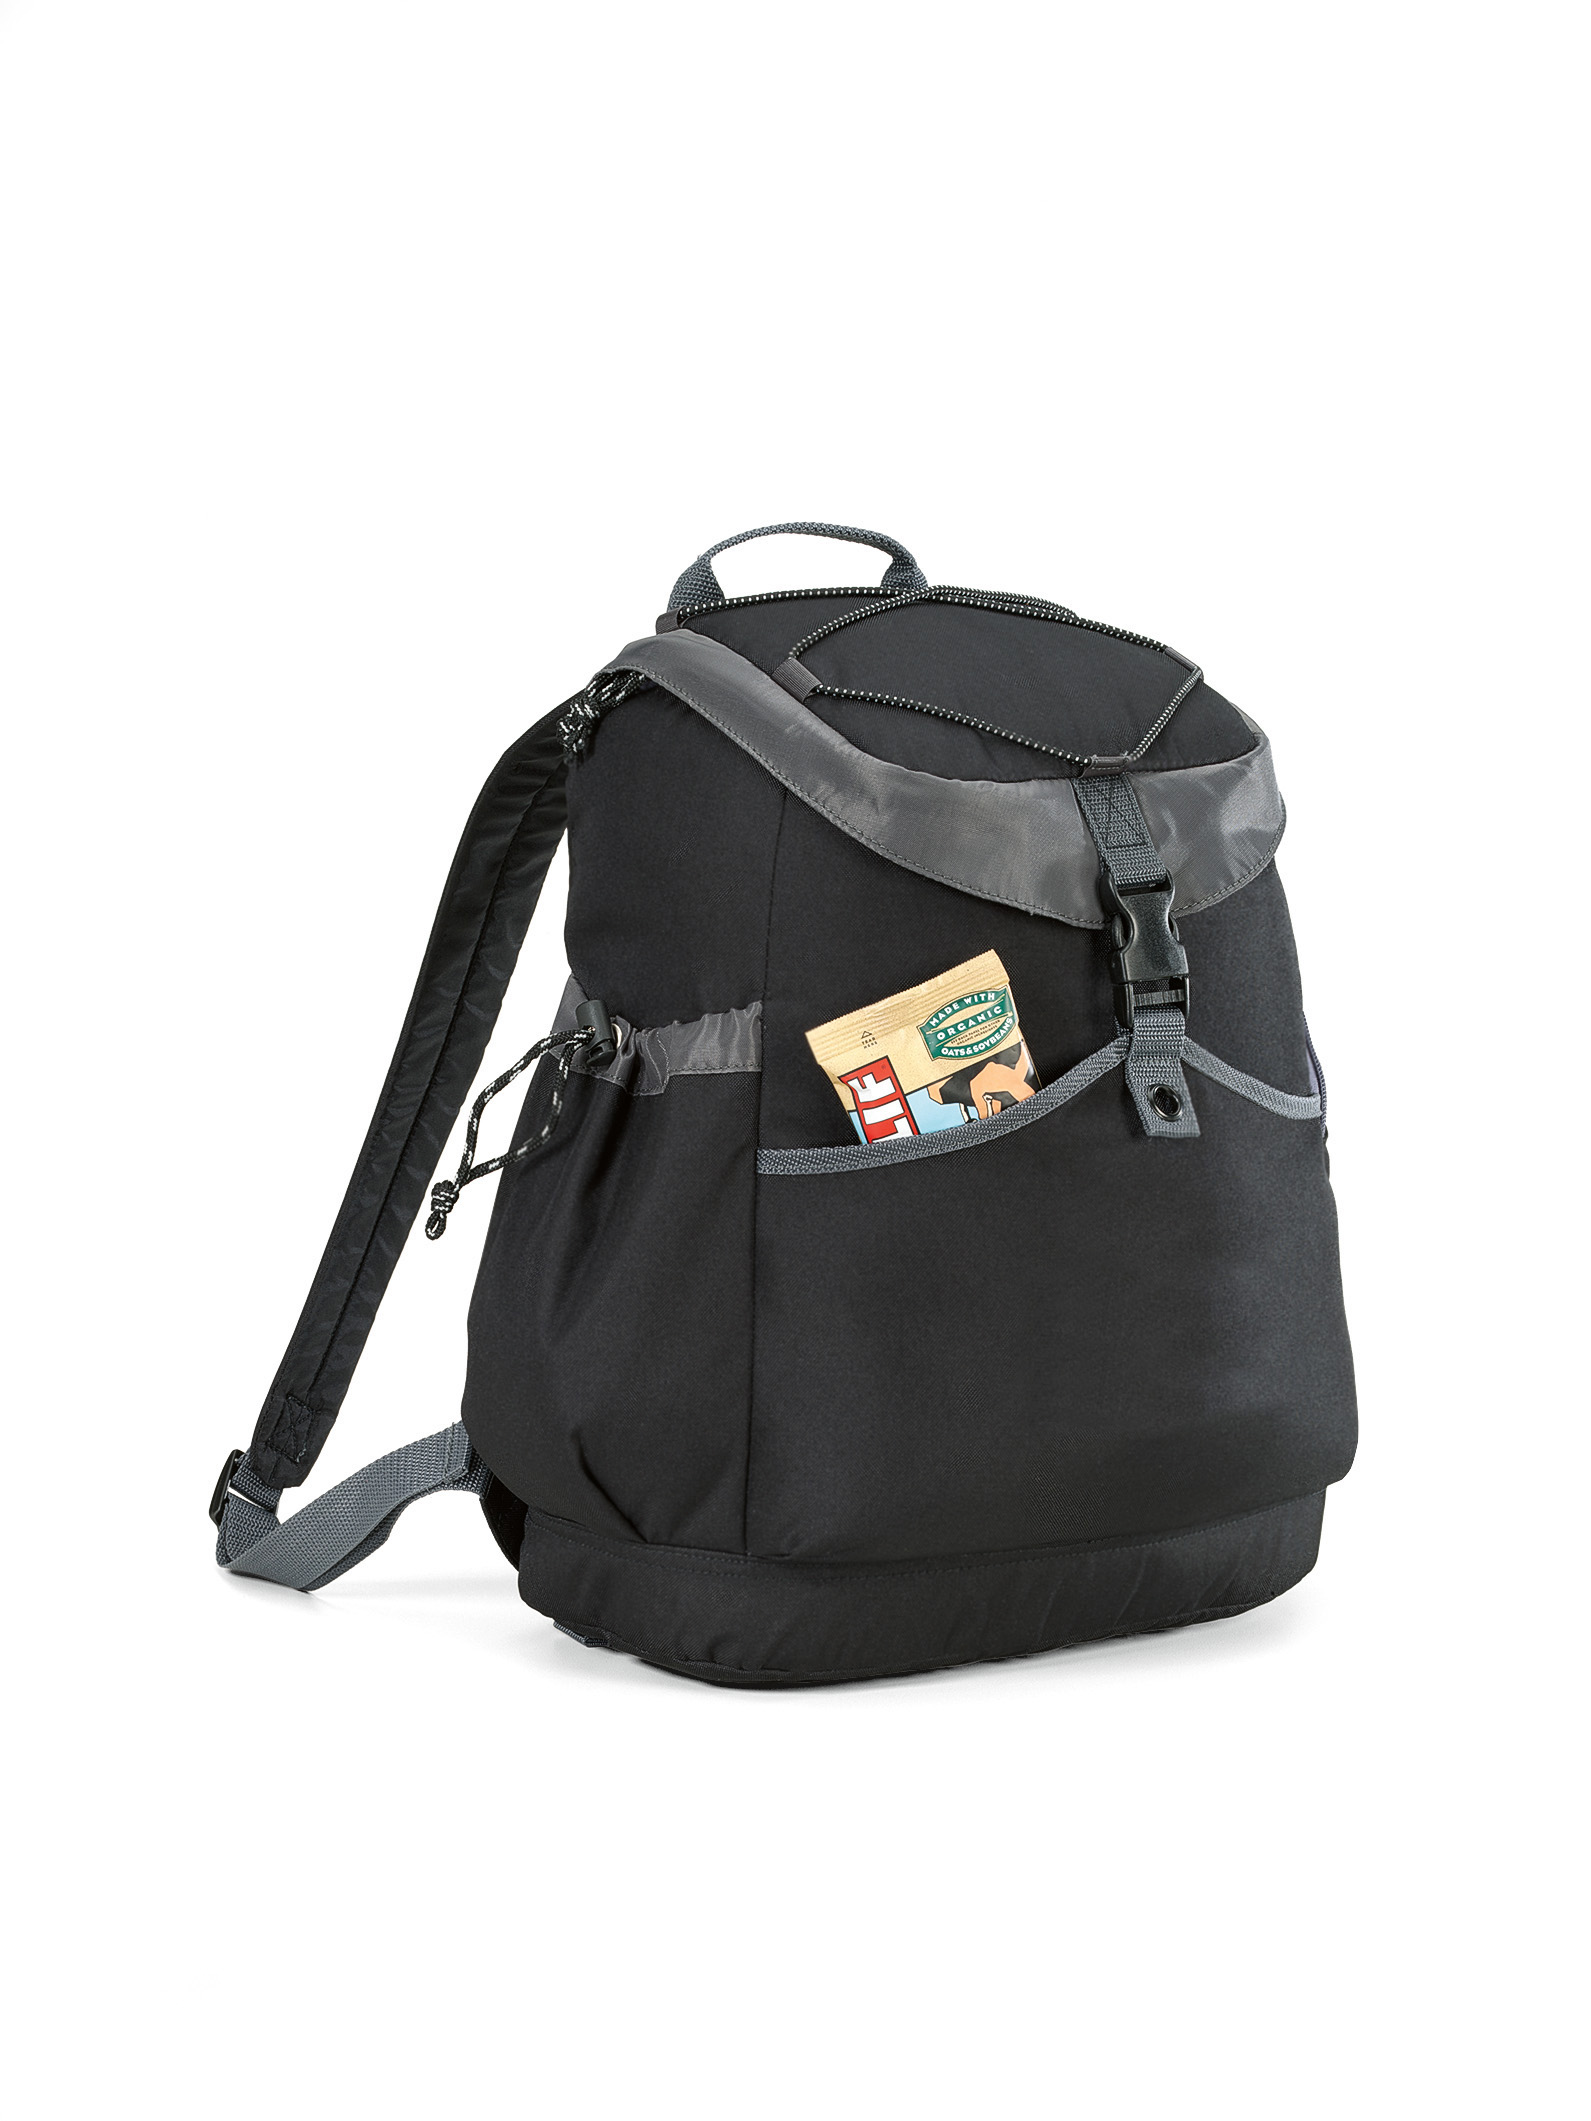 Gemline 9290 - Park Side Backpack Cooler